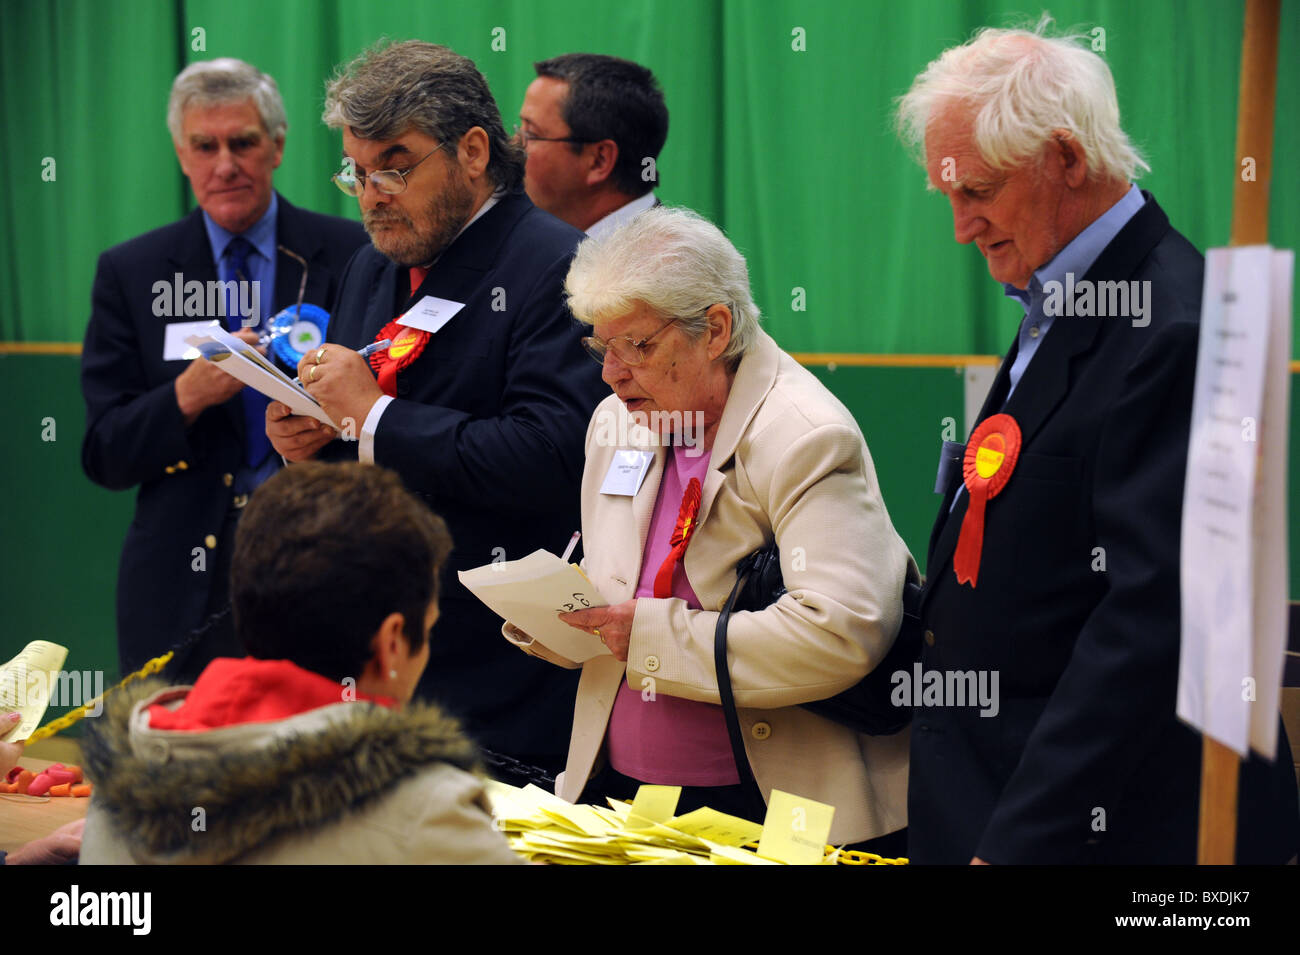 2010 recuento de las elecciones generales celebradas en el K2 en Crawley - Partido Político escrutadores supervisar el recuento de los votos emitidos Foto de stock